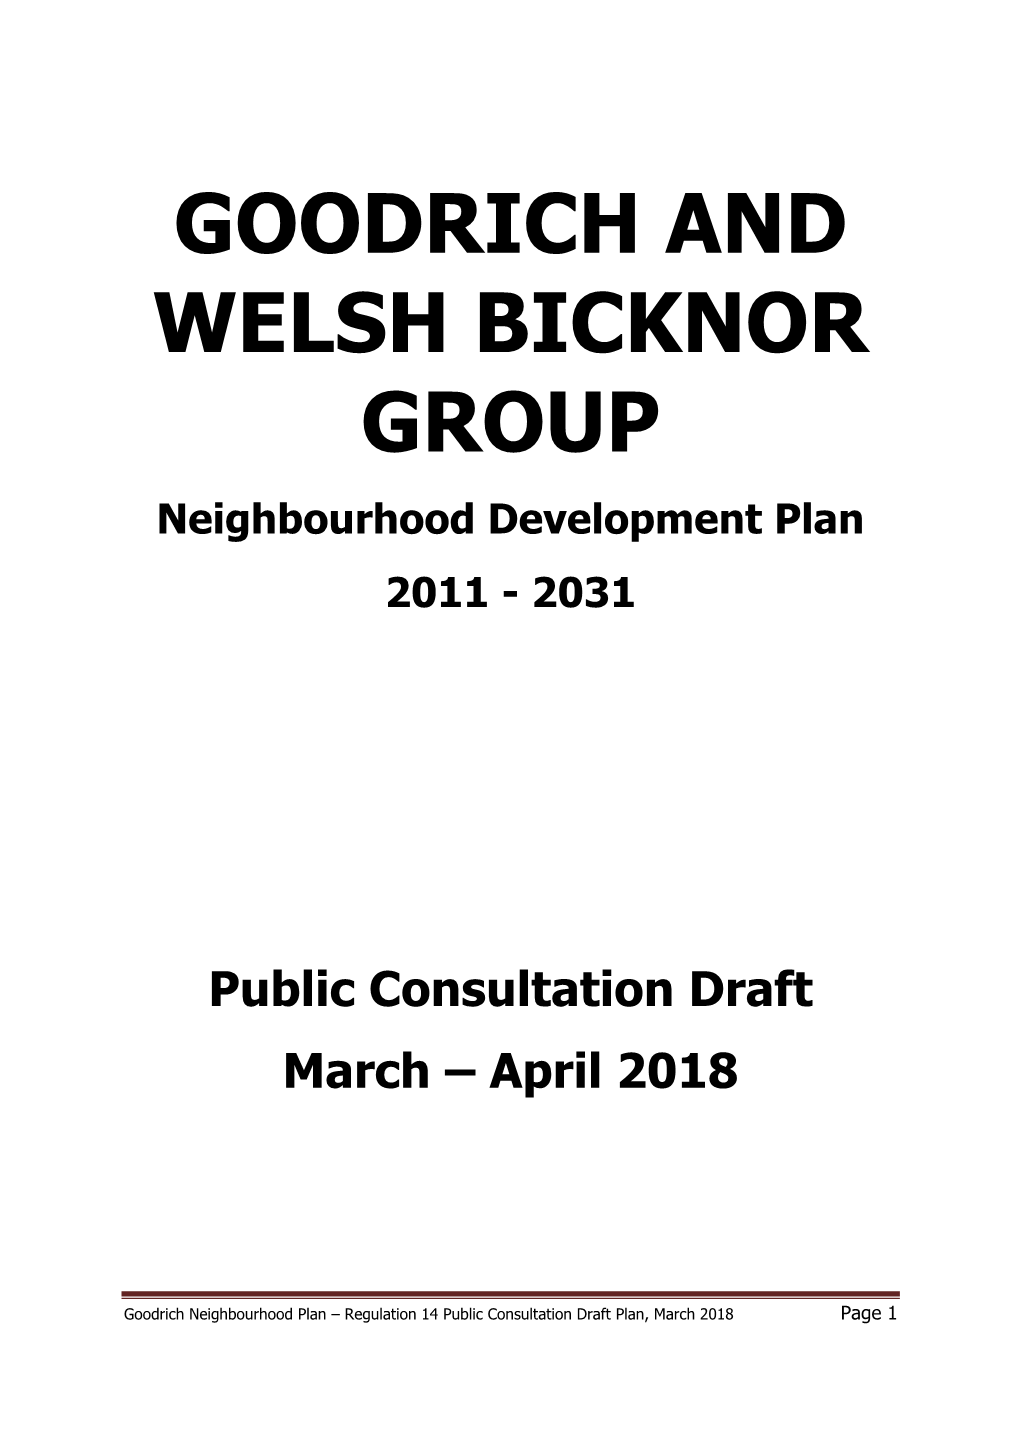 Goodrich and Welsh Bicknor Regulation 14 Neighbourhood